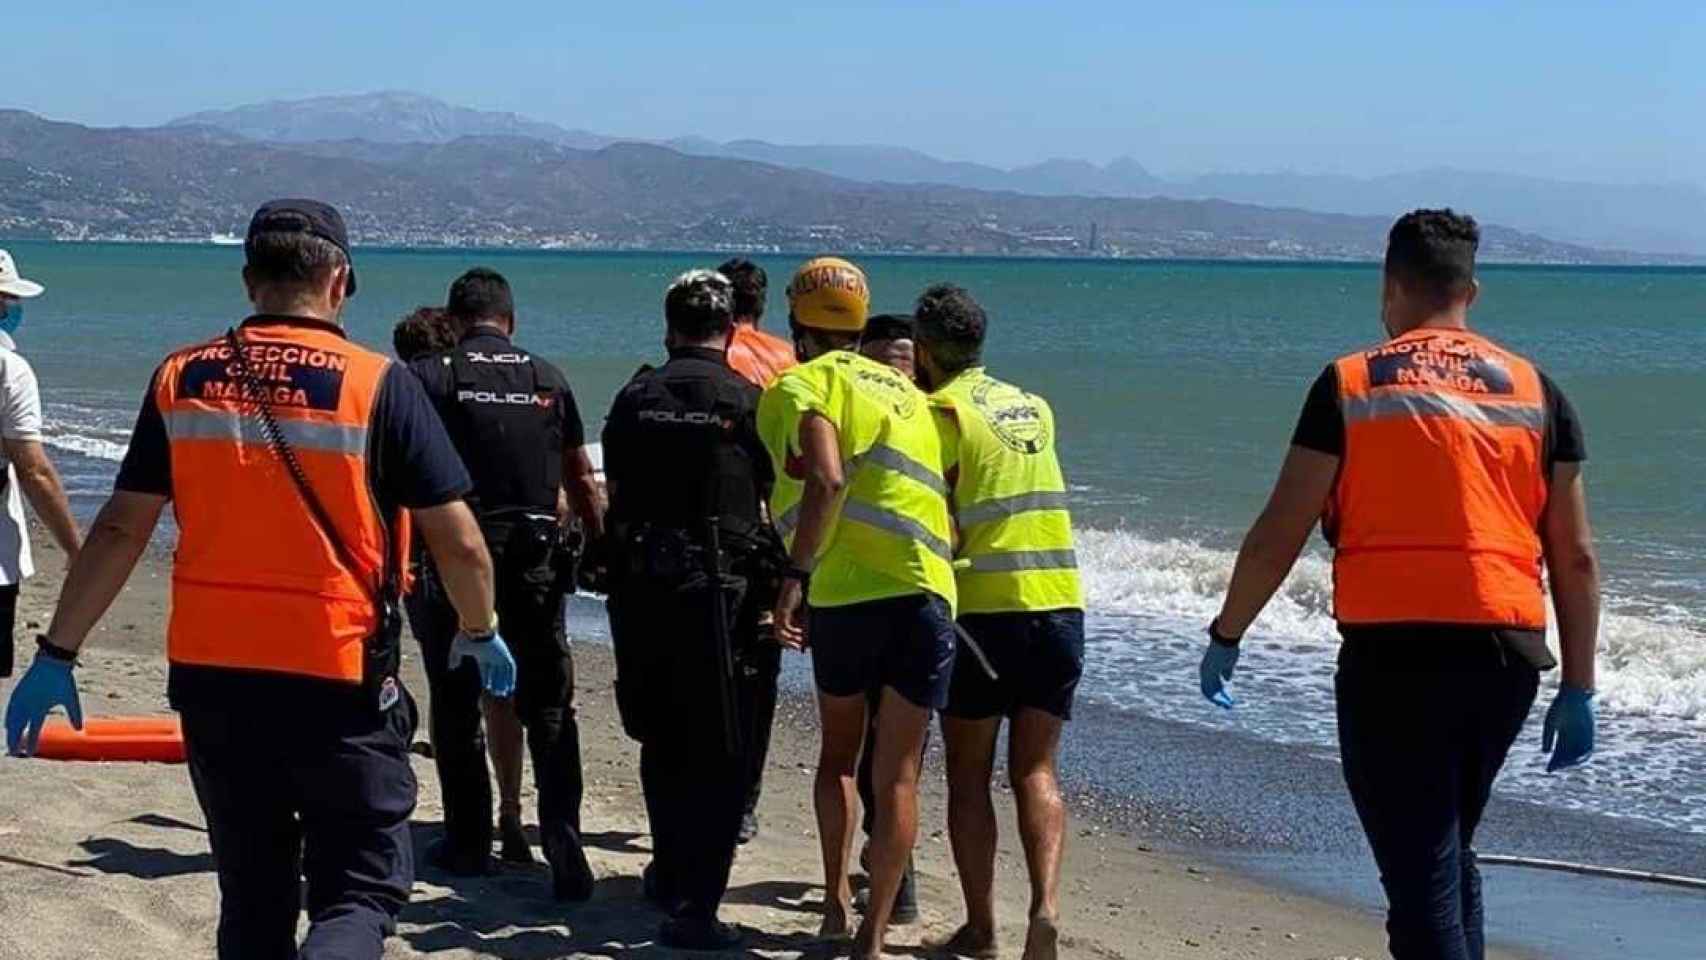 Protección Civil actuando en la playa.